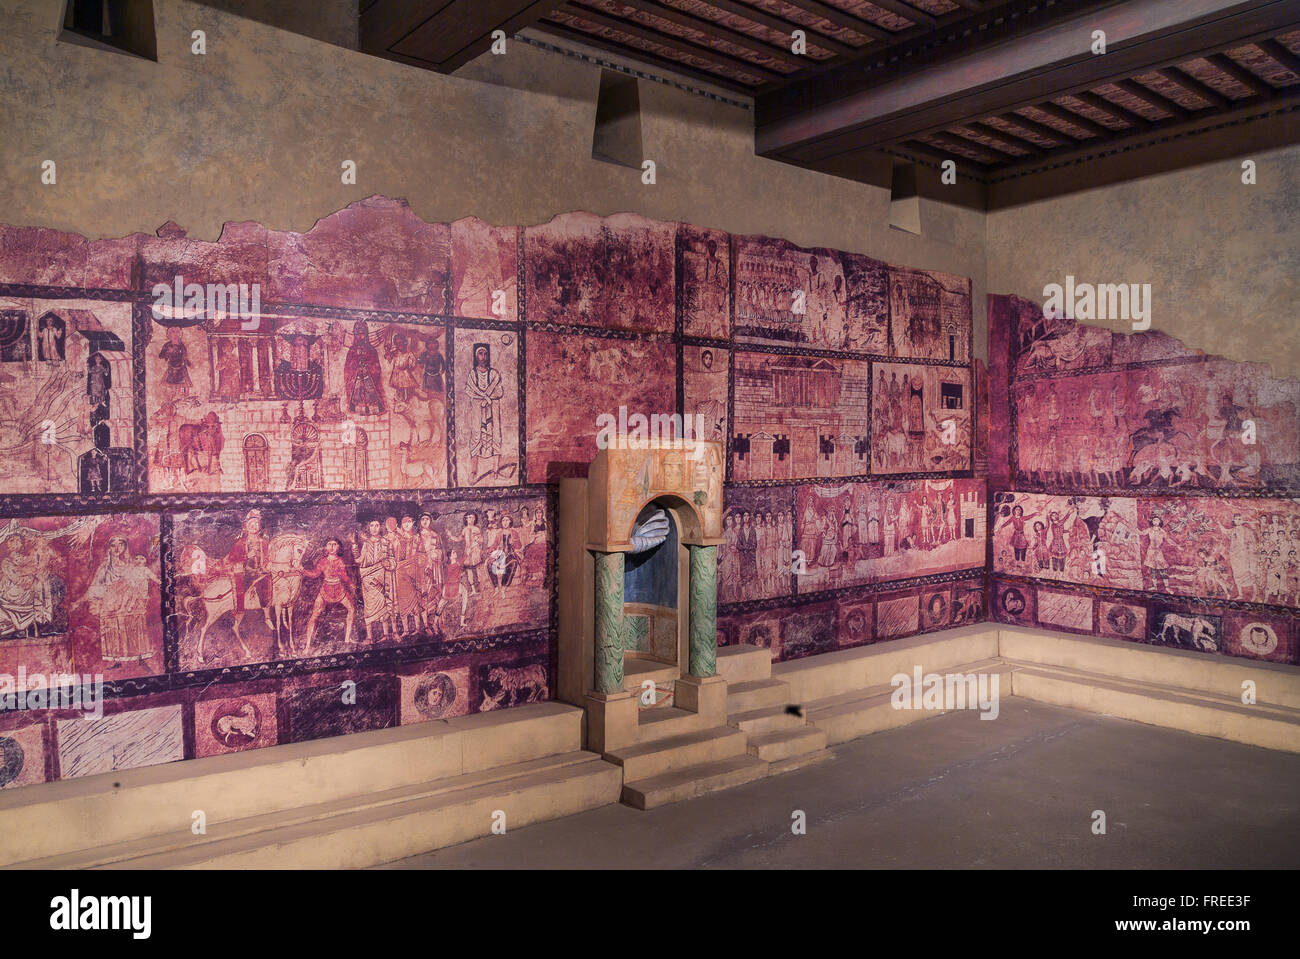 Synagogue Doura-europos, murales, 3e siècle, ancienne ville de Syrie, Musée de la Diaspora ou Beit Hatfutsot, Tel Aviv Banque D'Images